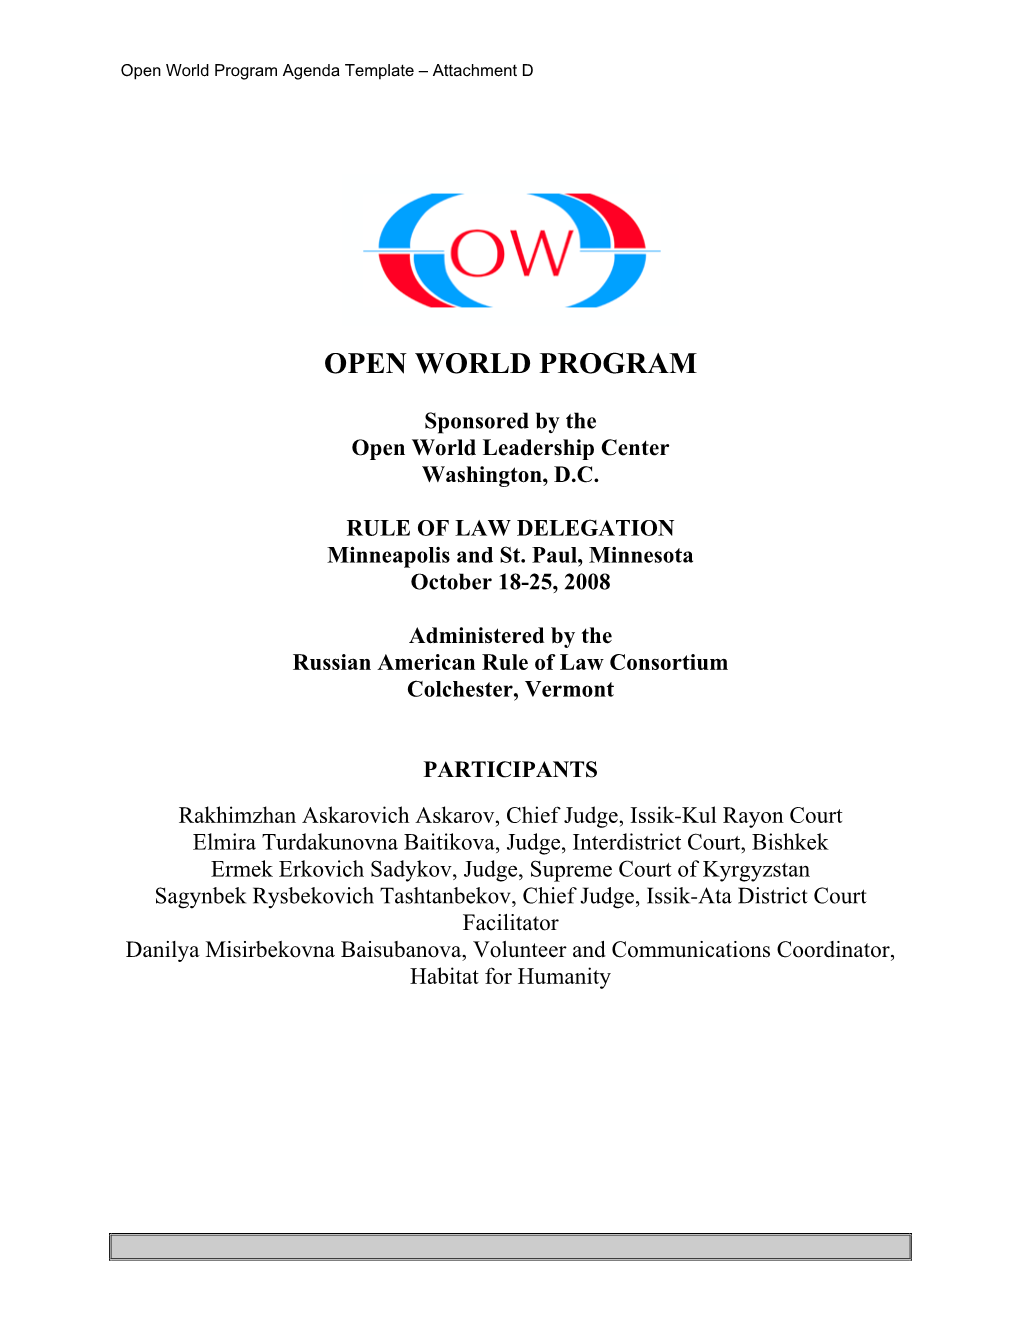 Agenda for the Kyrgyzstani Judges Open World Program in Minnesota